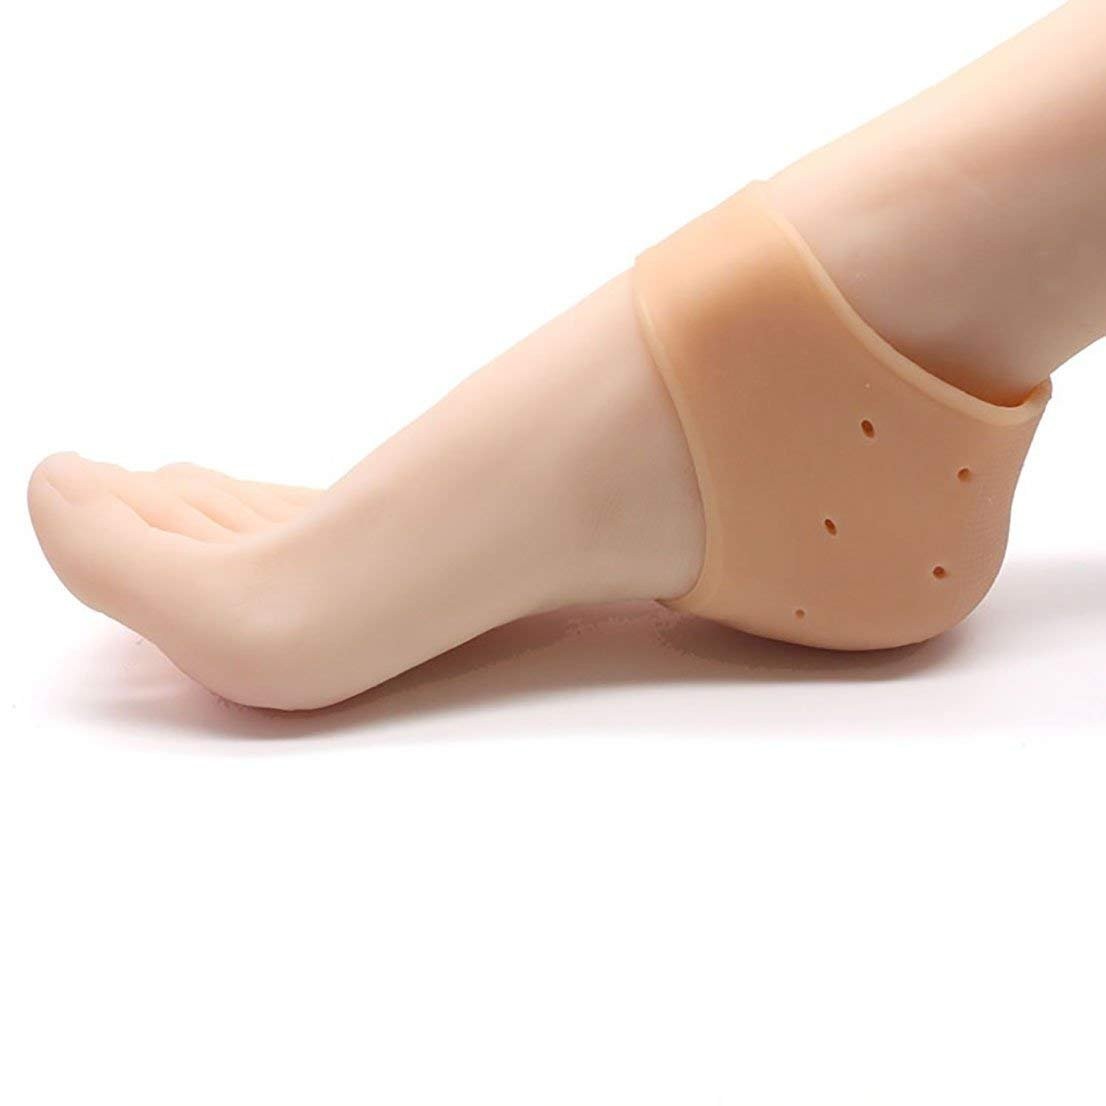 Amazon.com: Heel Protectors, Heel Cups for Heel Pain, (4PCS Beige)  Adjustable Breathable Heel Support, Heel Cushion, Heel Cups for Plantar  Fasciitis, Tendinitis, Heel Spur, Aching Feet Relieve, for Women : Health &